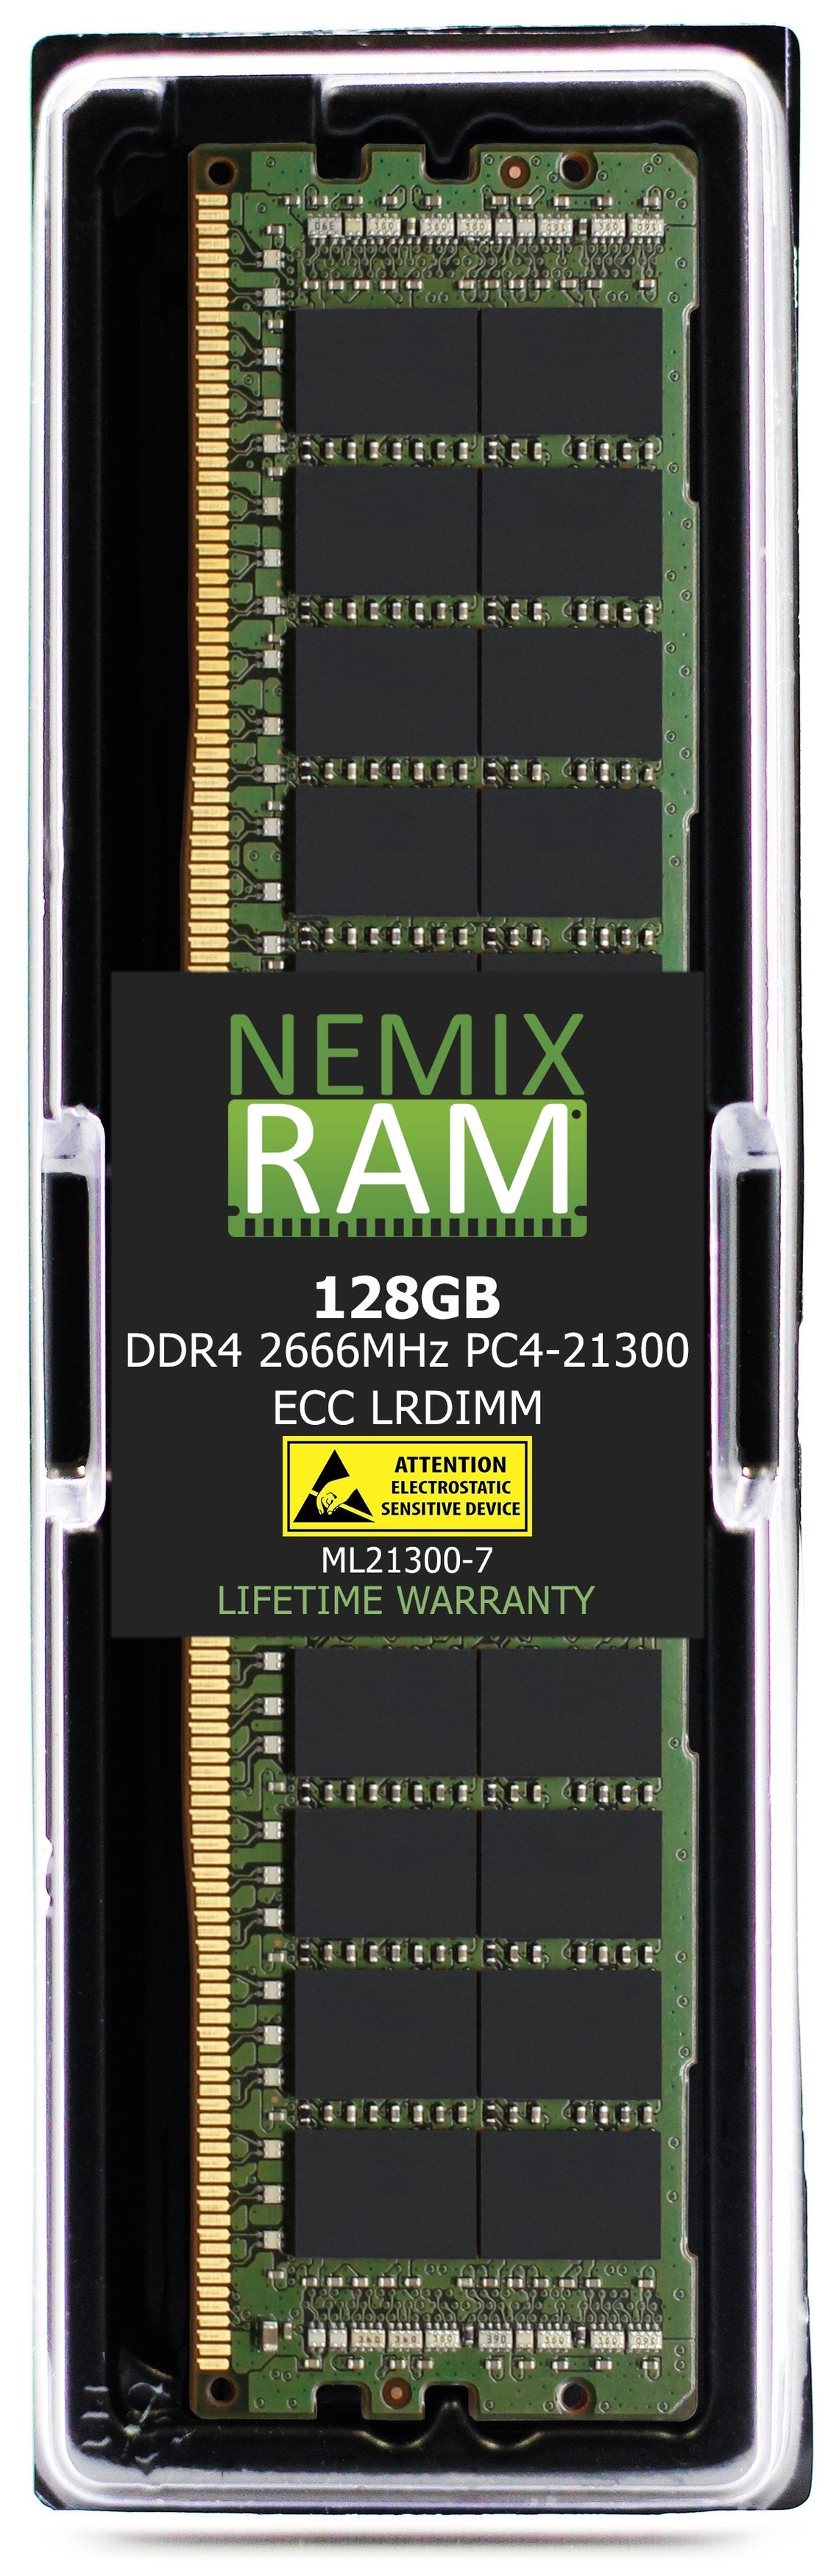 Hynix HMABAGL7C4R4N-VN 128GB DDR4 2666MHZ PC4-21300 LRDIMM Compatible Memory Module